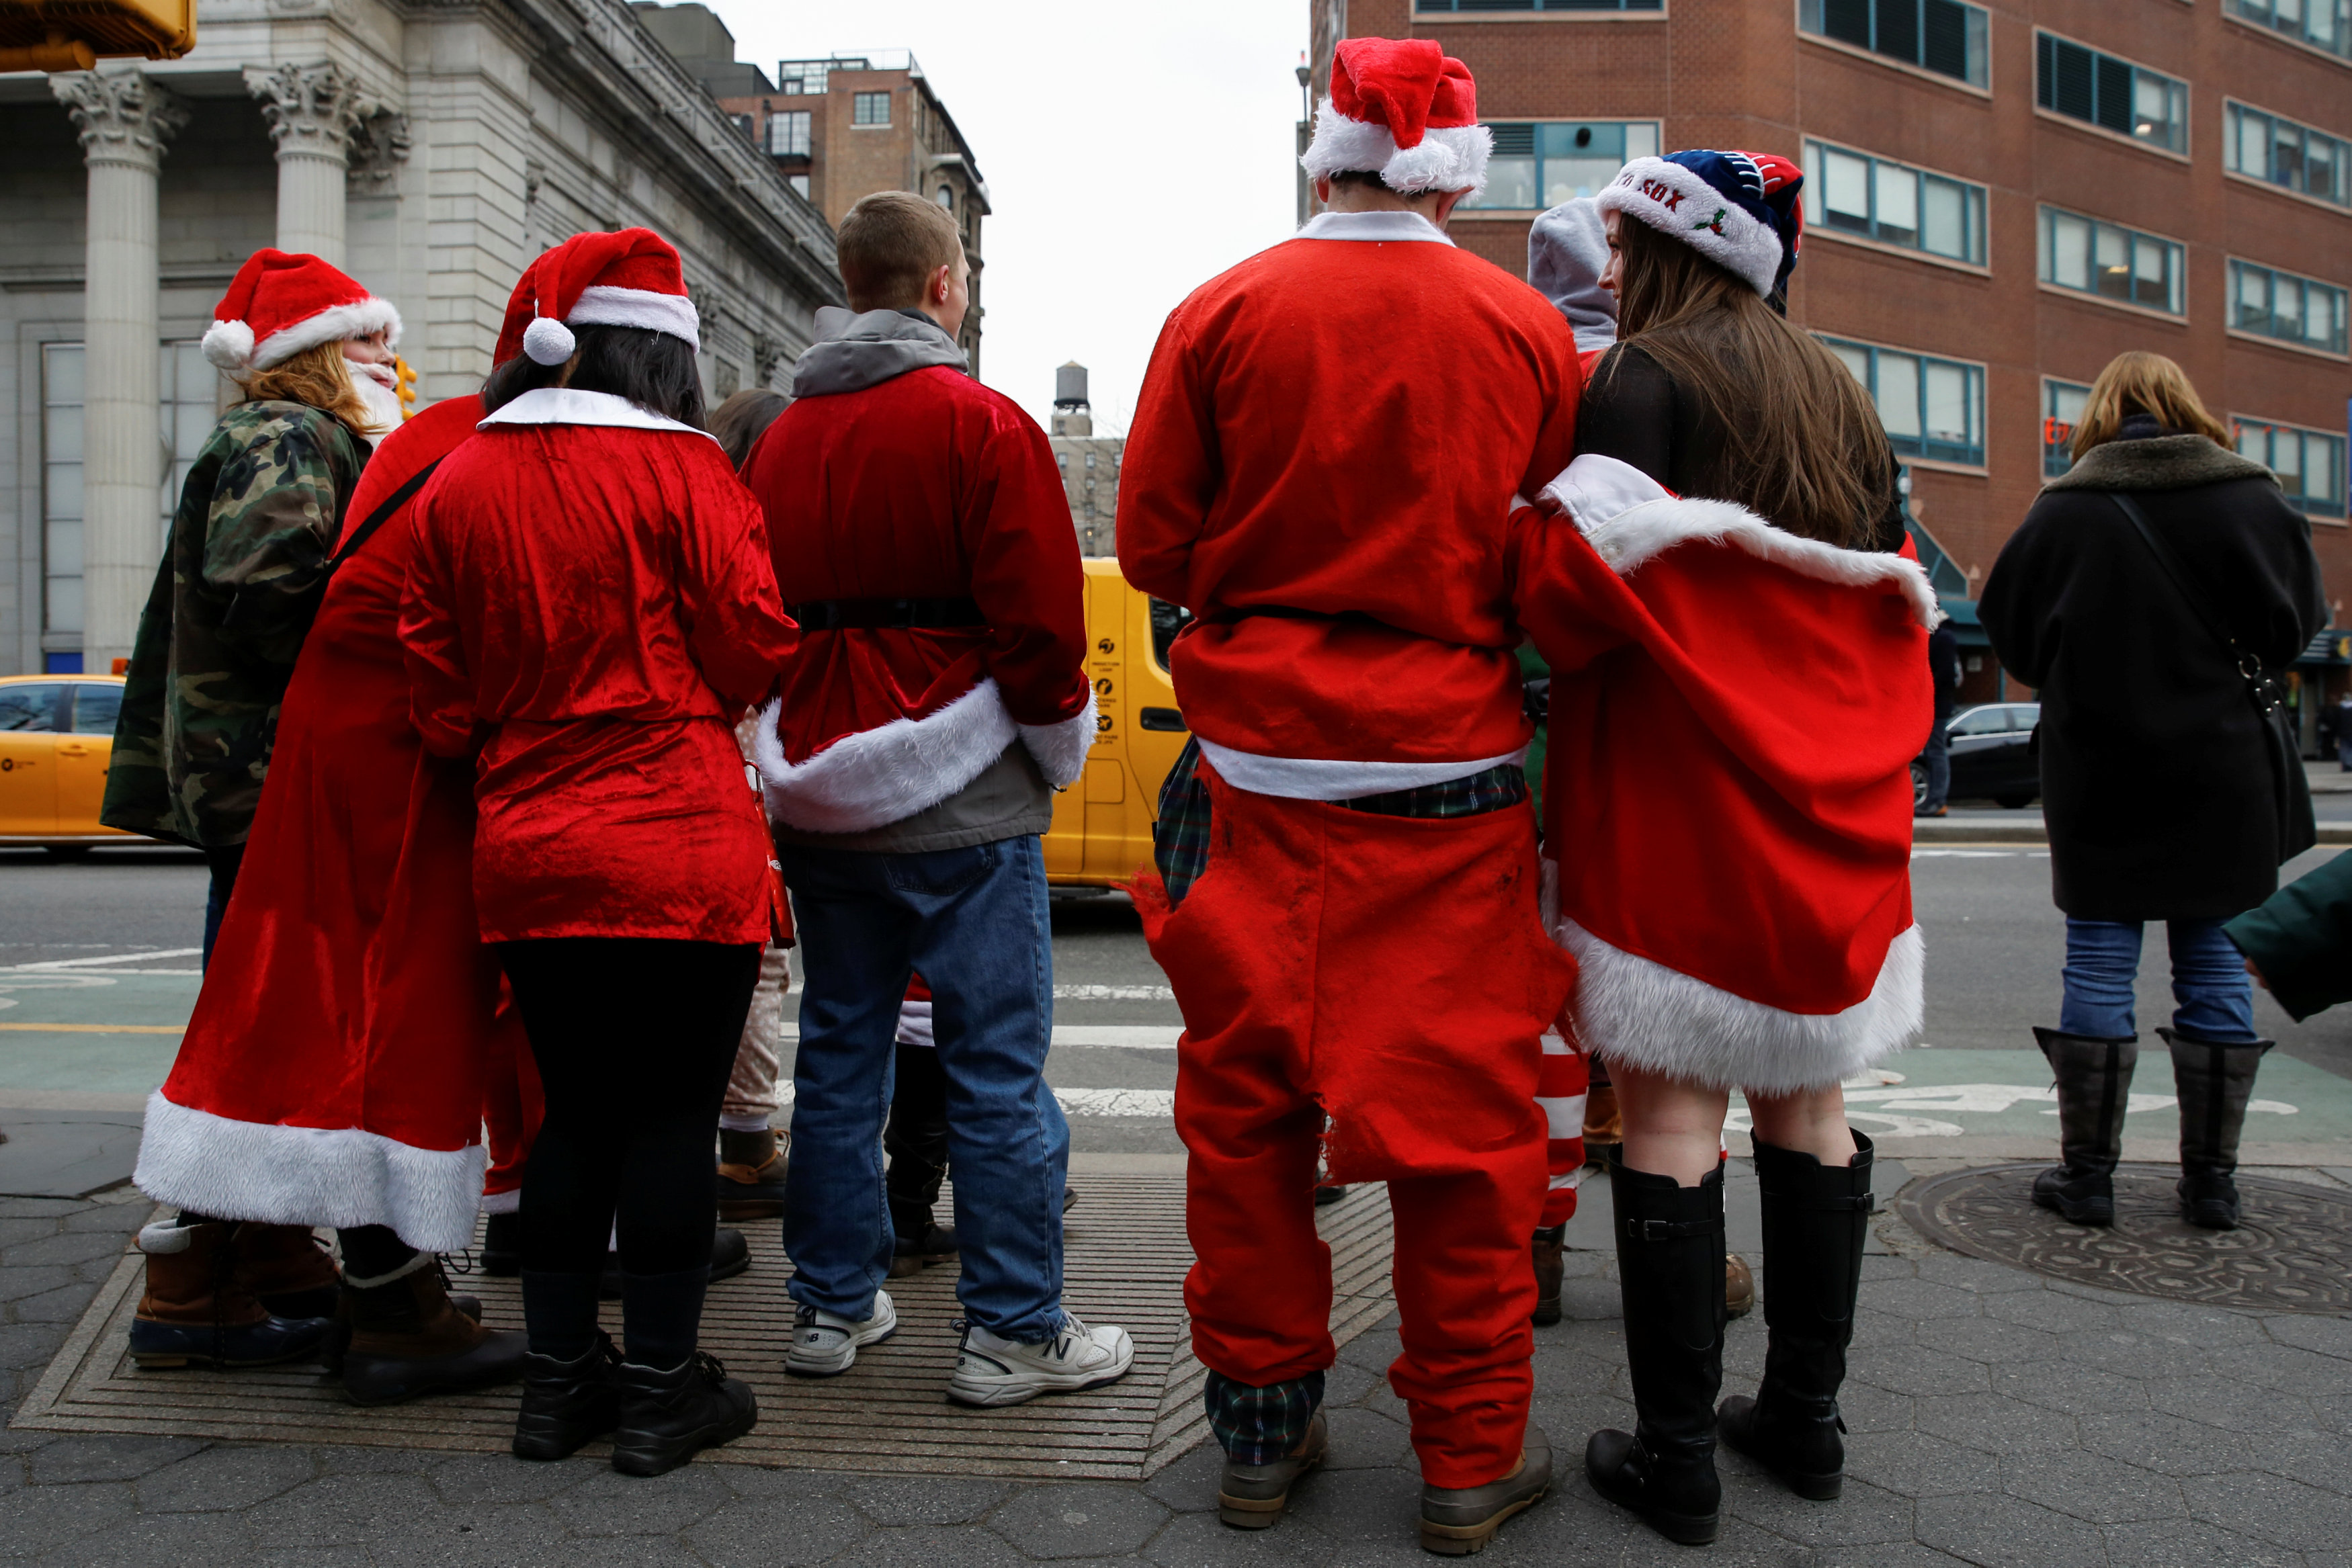 سكان نيويورك يتنكرون فى زى بابا نويل  (17)